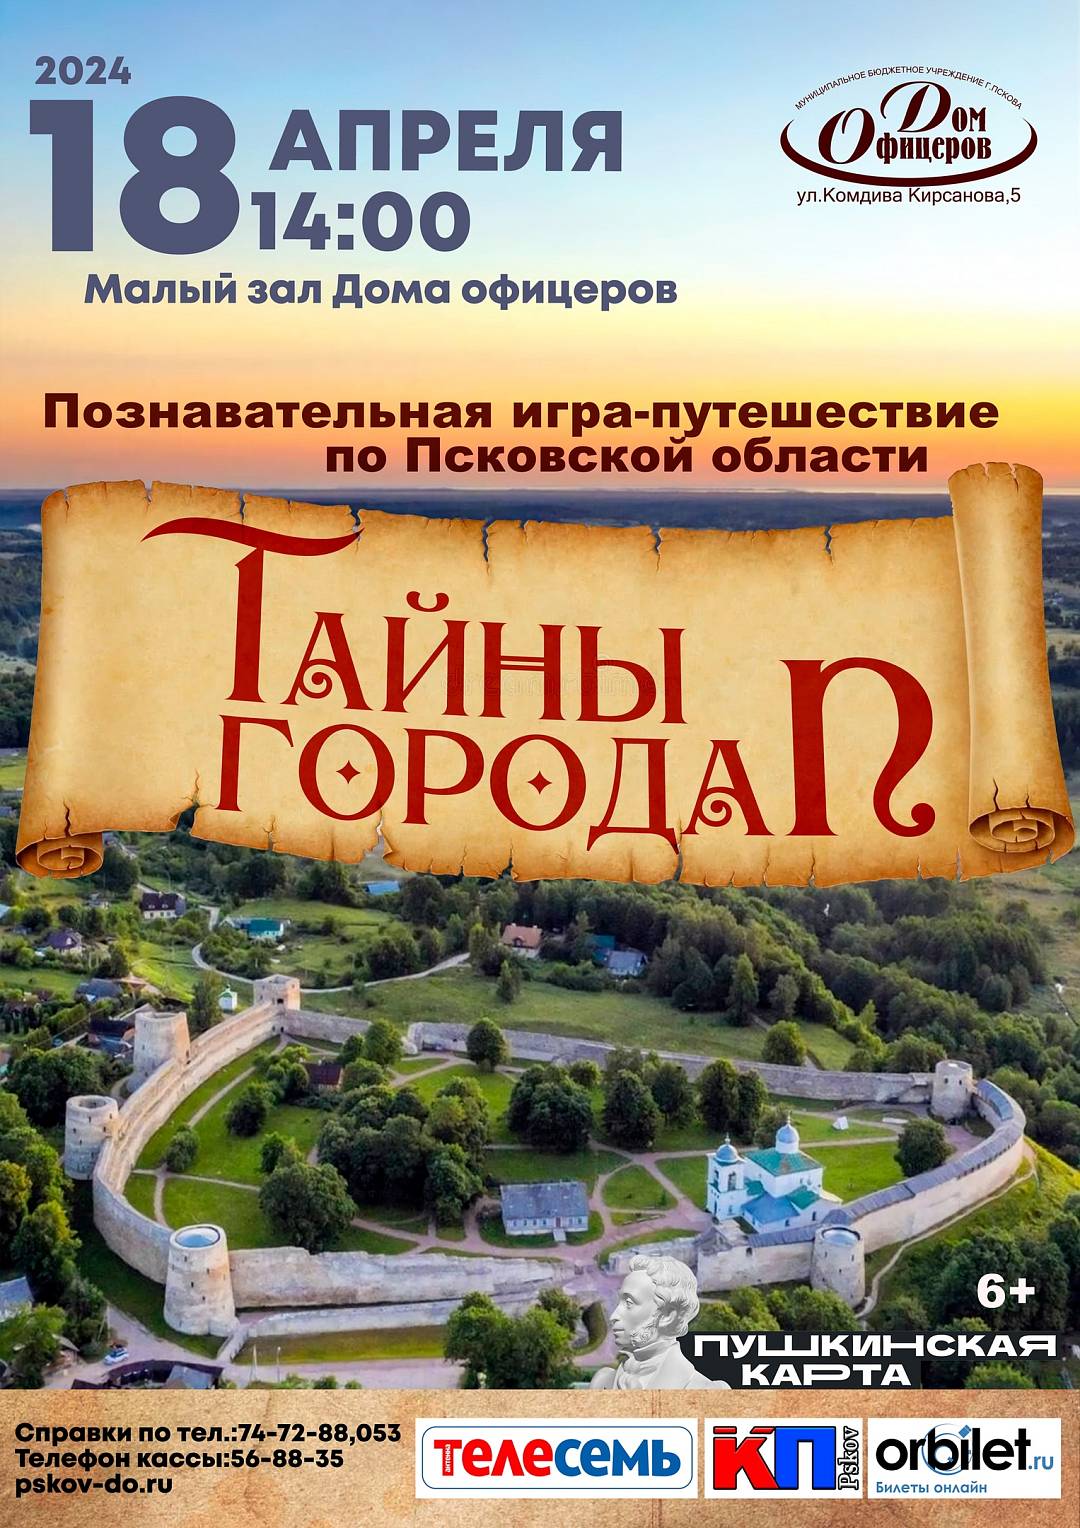 Познавательная игра-путешествие по Псковской области «Тайны города П»